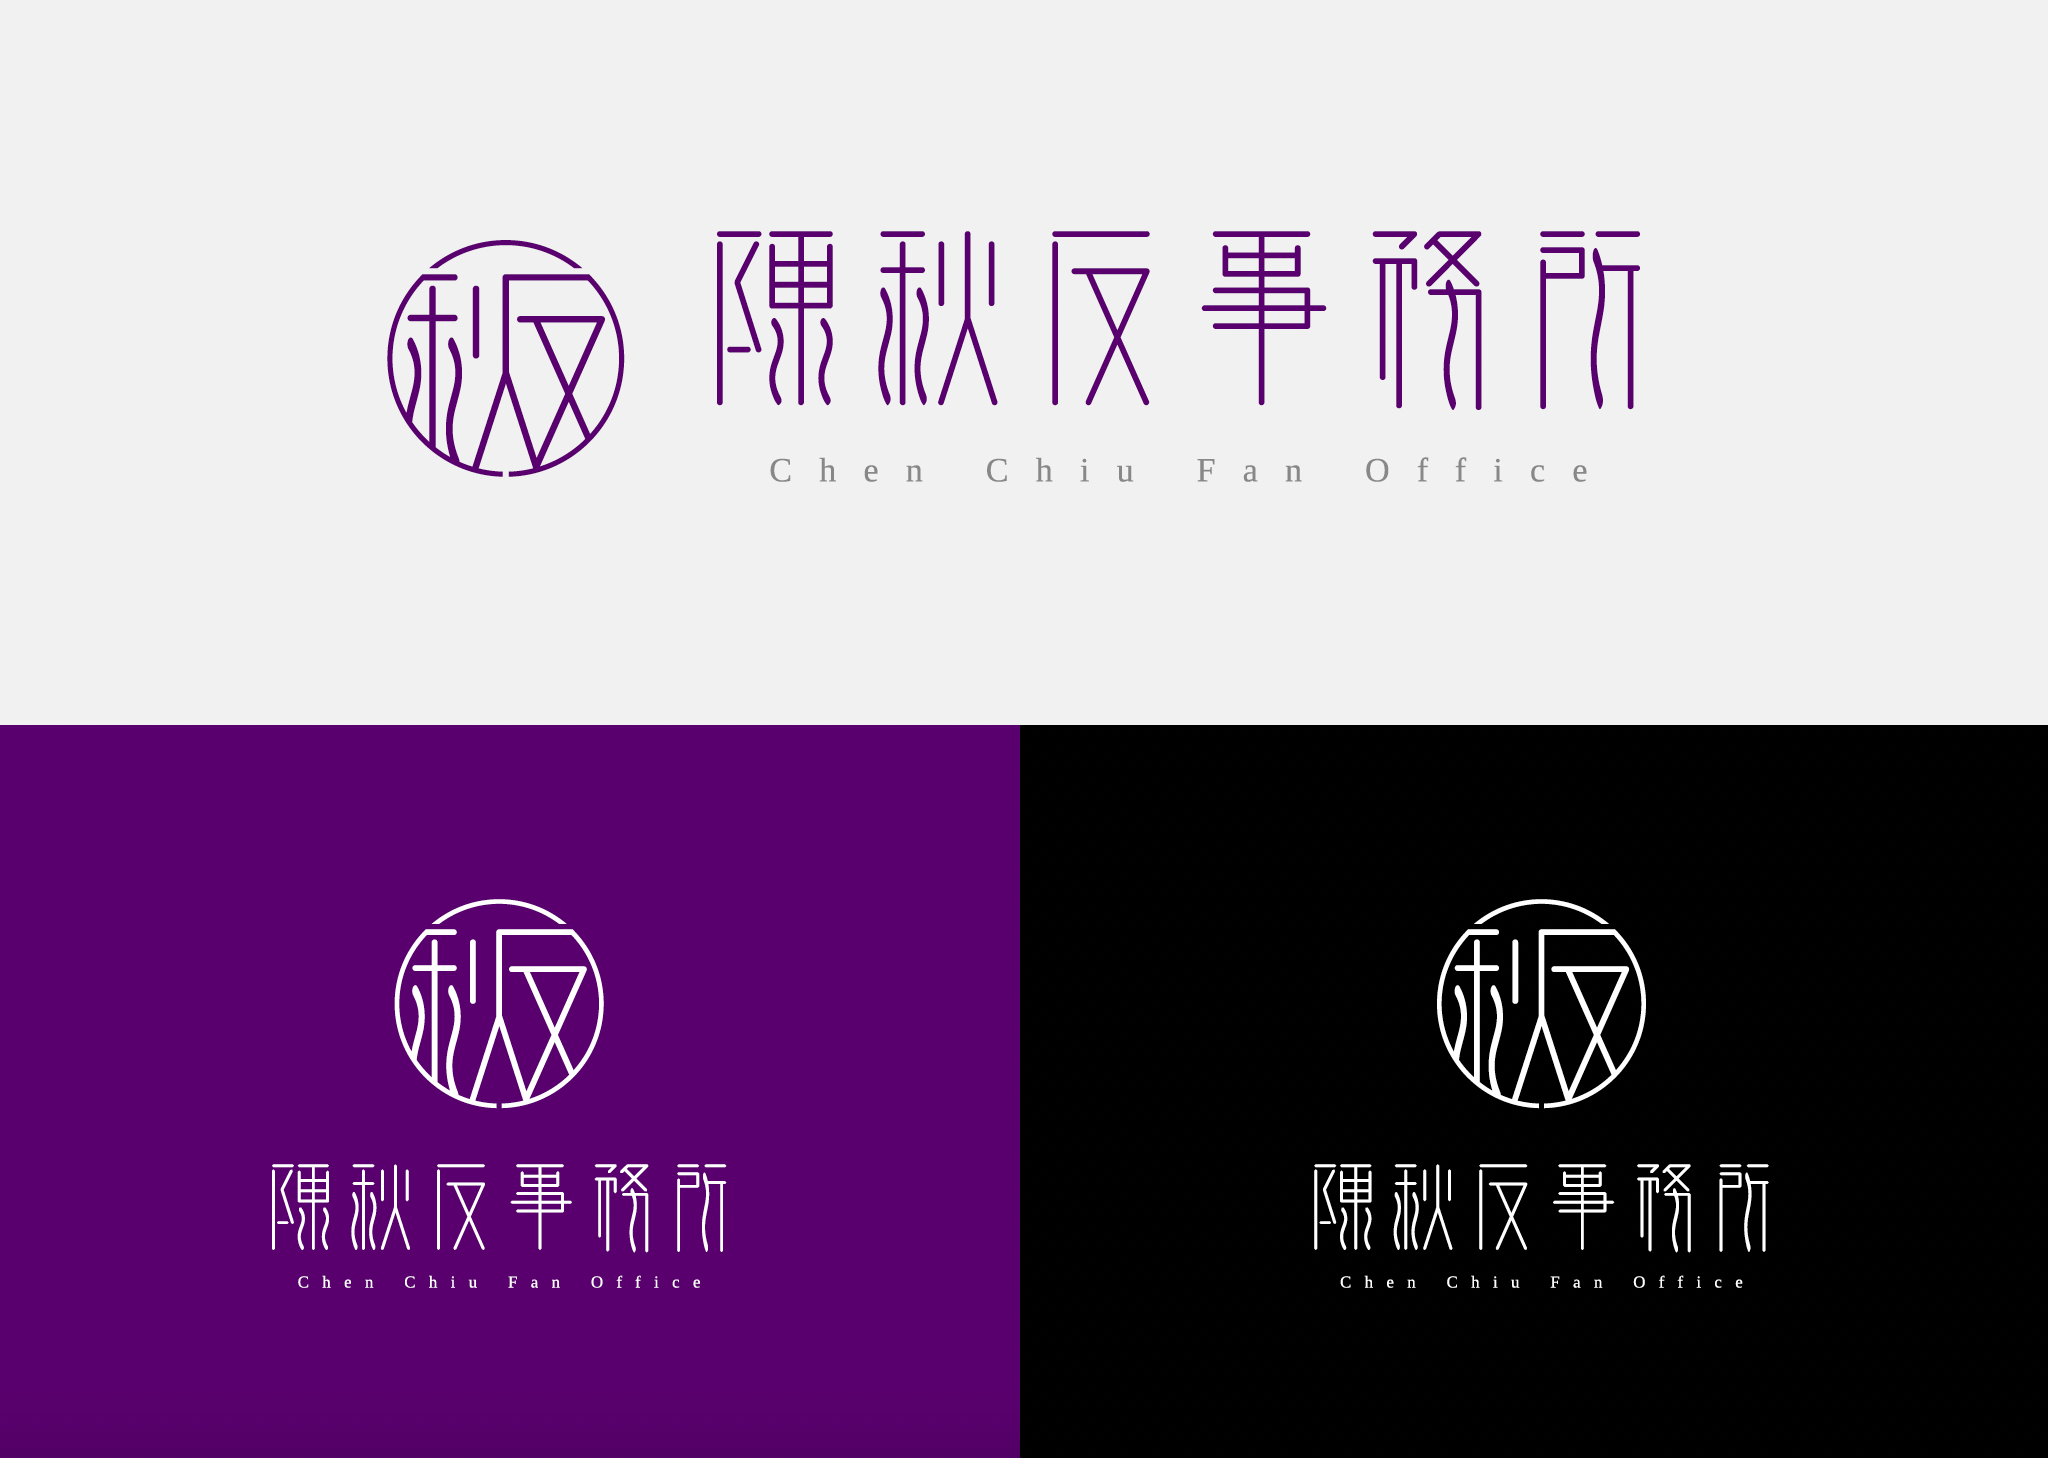 Chenchiufan Office Logo Design